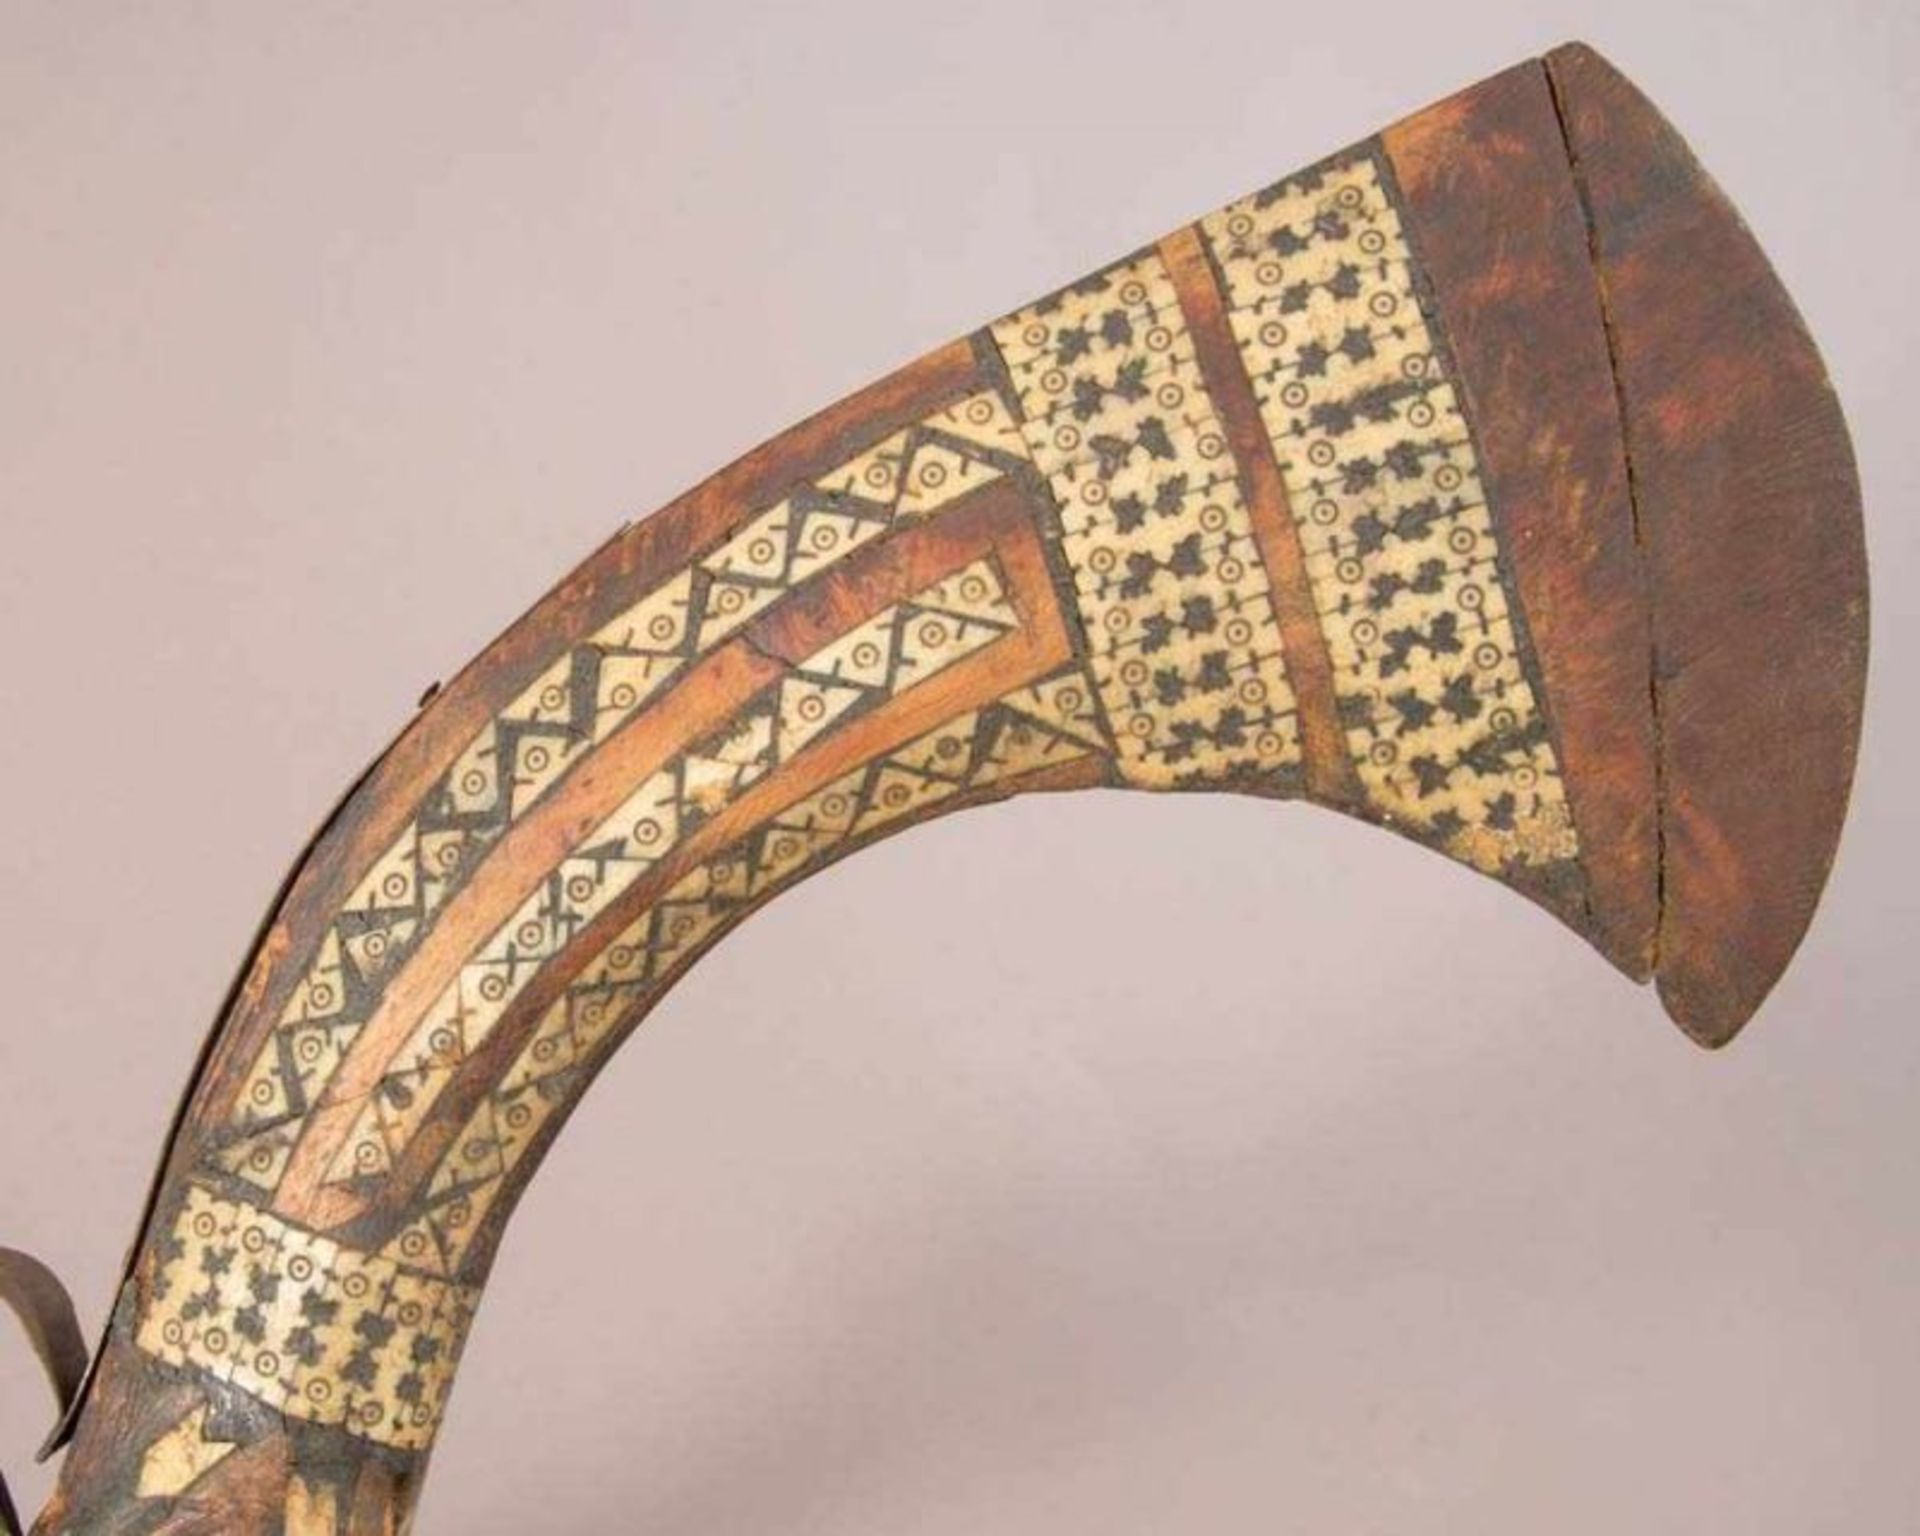 Afghanische Flinte. Holz mit eingelegtem Knochendekor. Länge ca. 140 cm. - Image 4 of 8